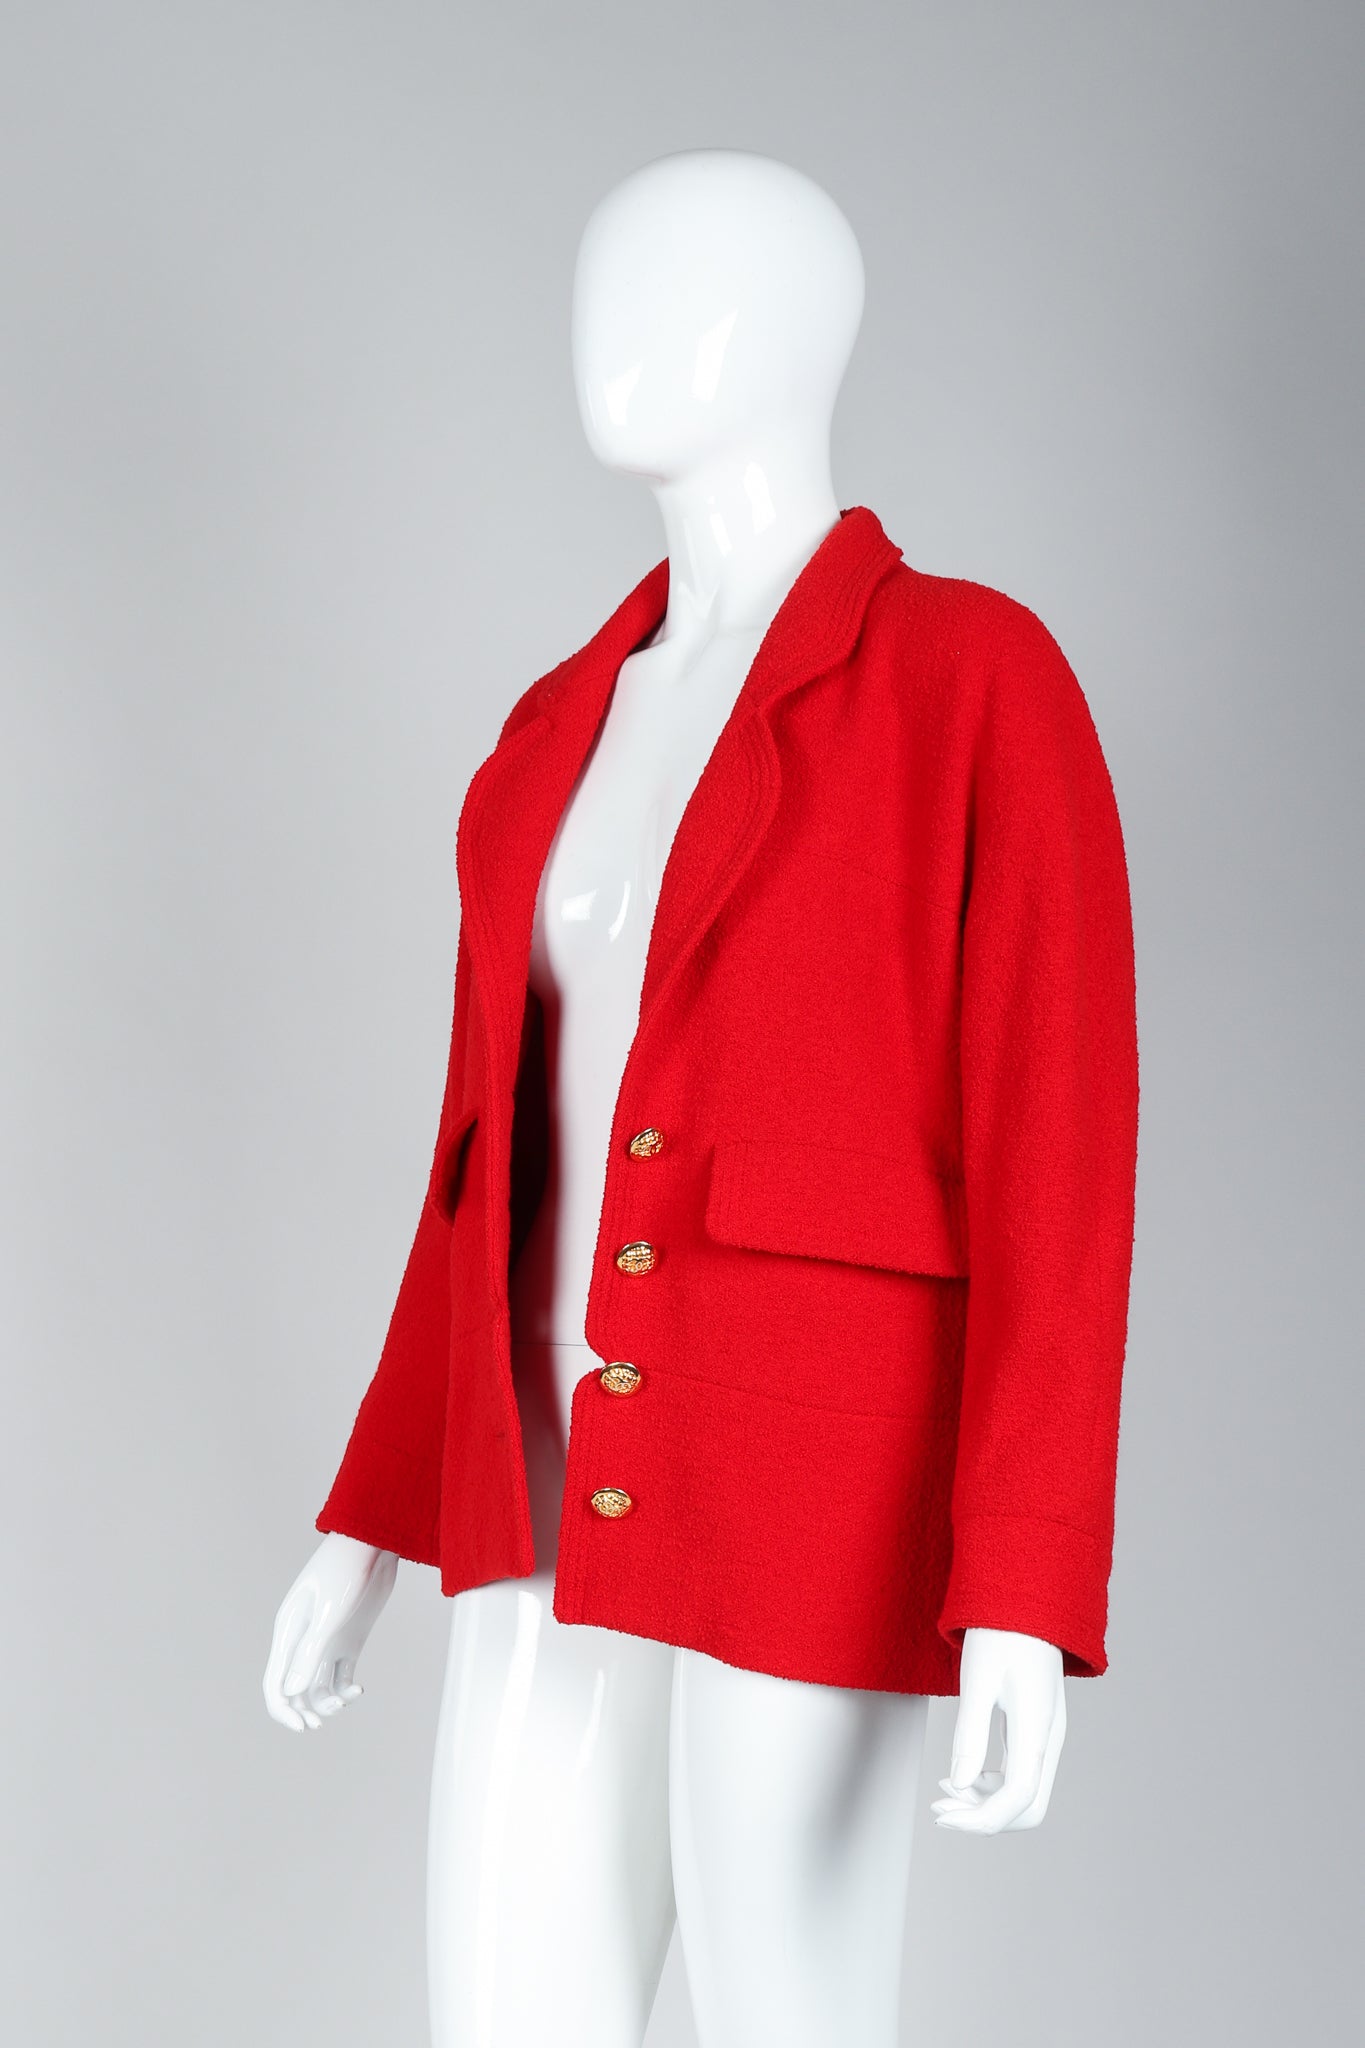 Recess Vintage Chanel Red Curved Lapel Bouclé Jacket on Mannequin, Unbuttoned